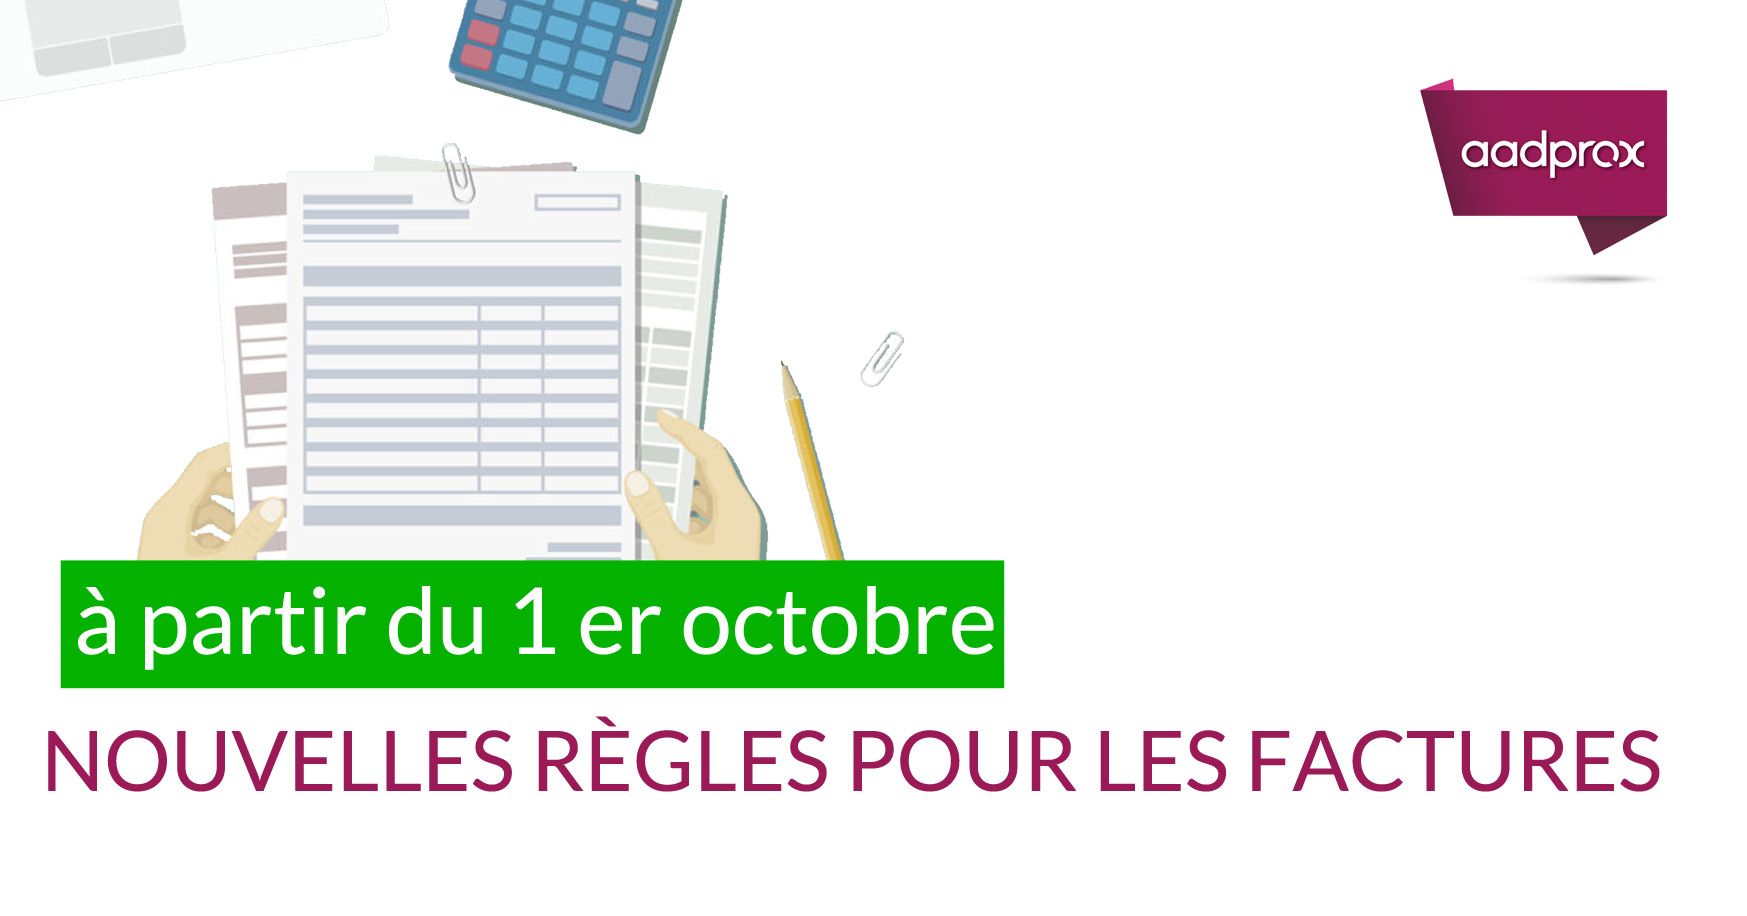 You are currently viewing Mentions obligatoires d’une facture : ce qui change au 1er octobre